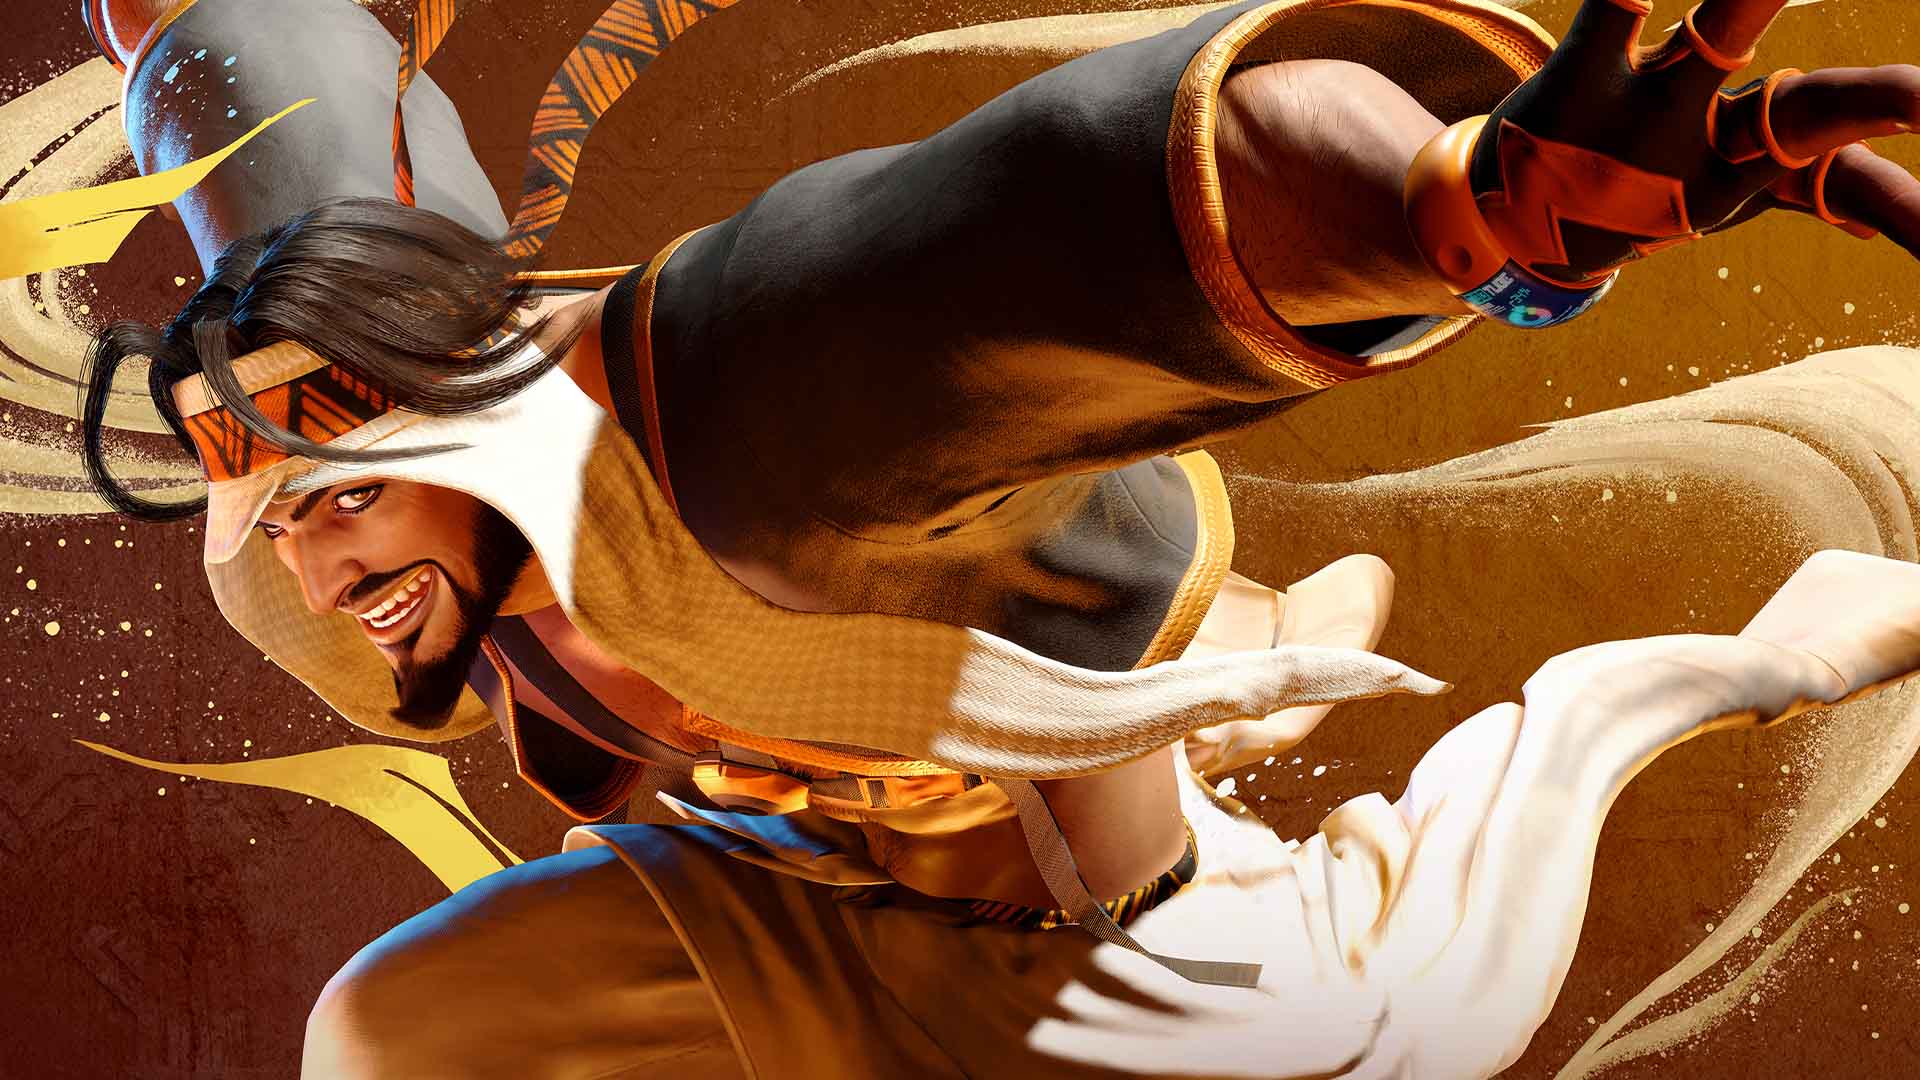 Capcom har släppt en trailer för den första DLC:n för Street Fighter 6, som lägger till en ny karaktär i spelet - Rashid